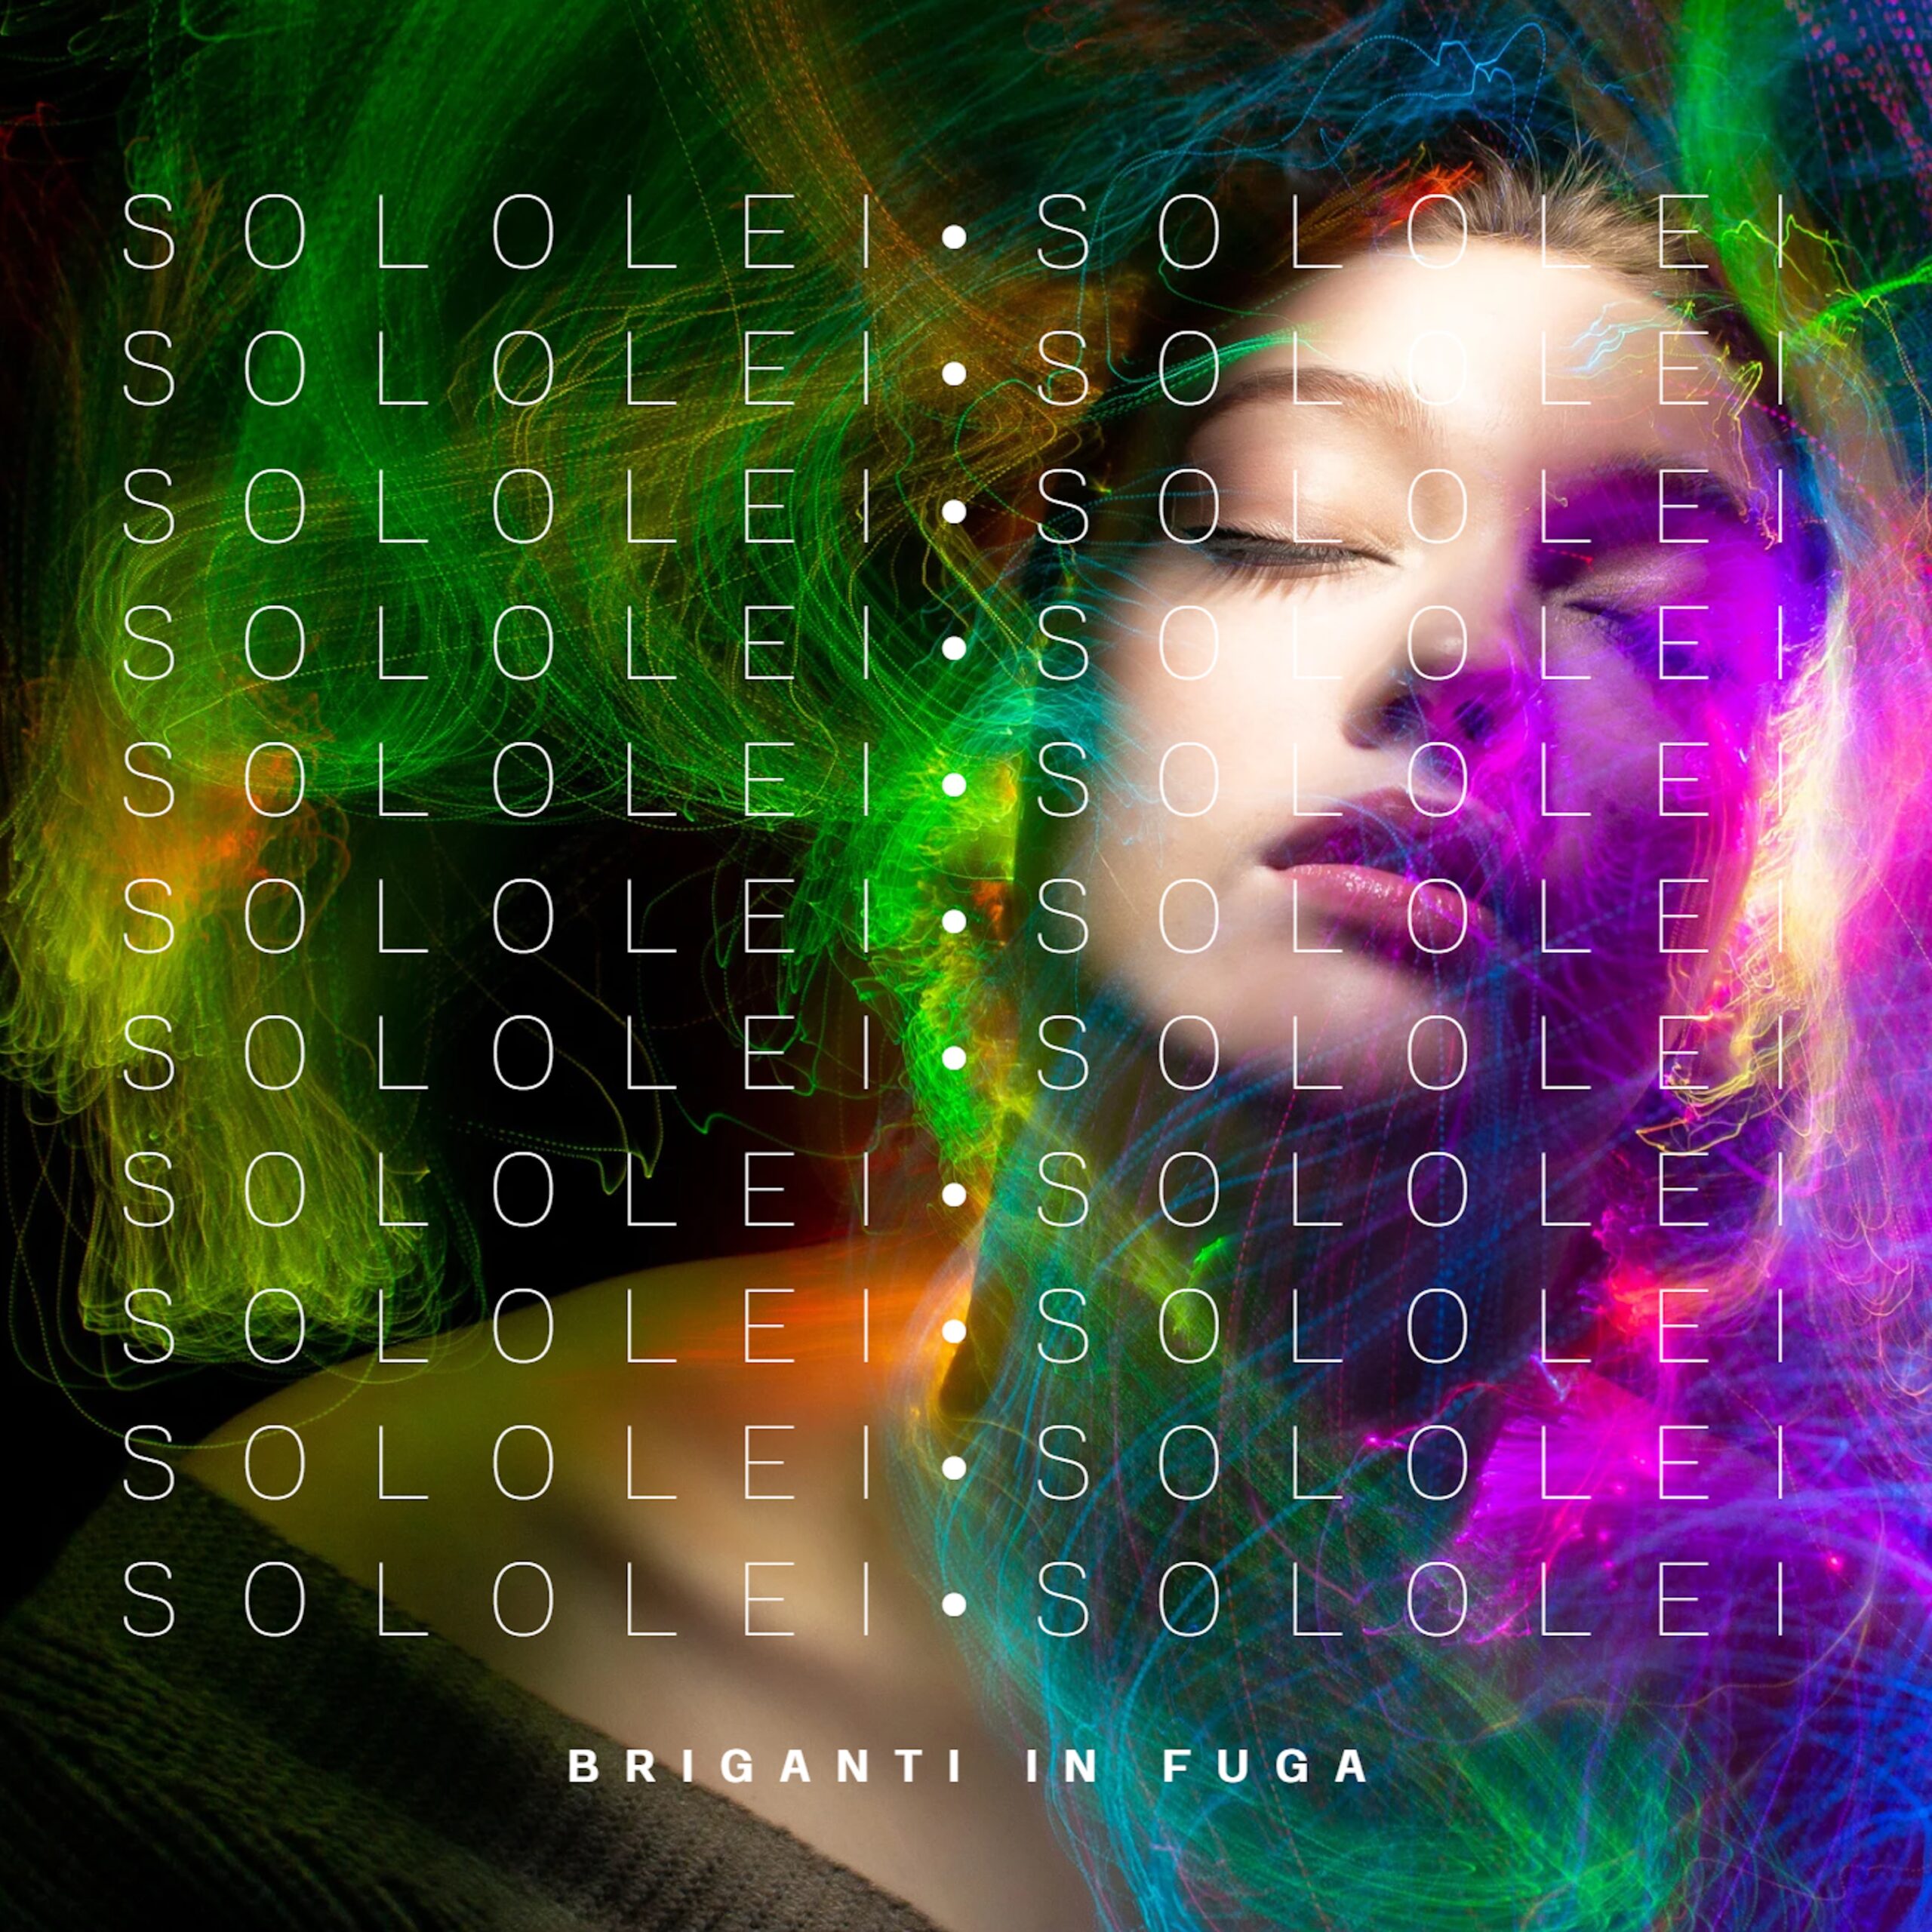 “Solo lei” è il nuovo singolo della rock band italiana Briganti in Fuga